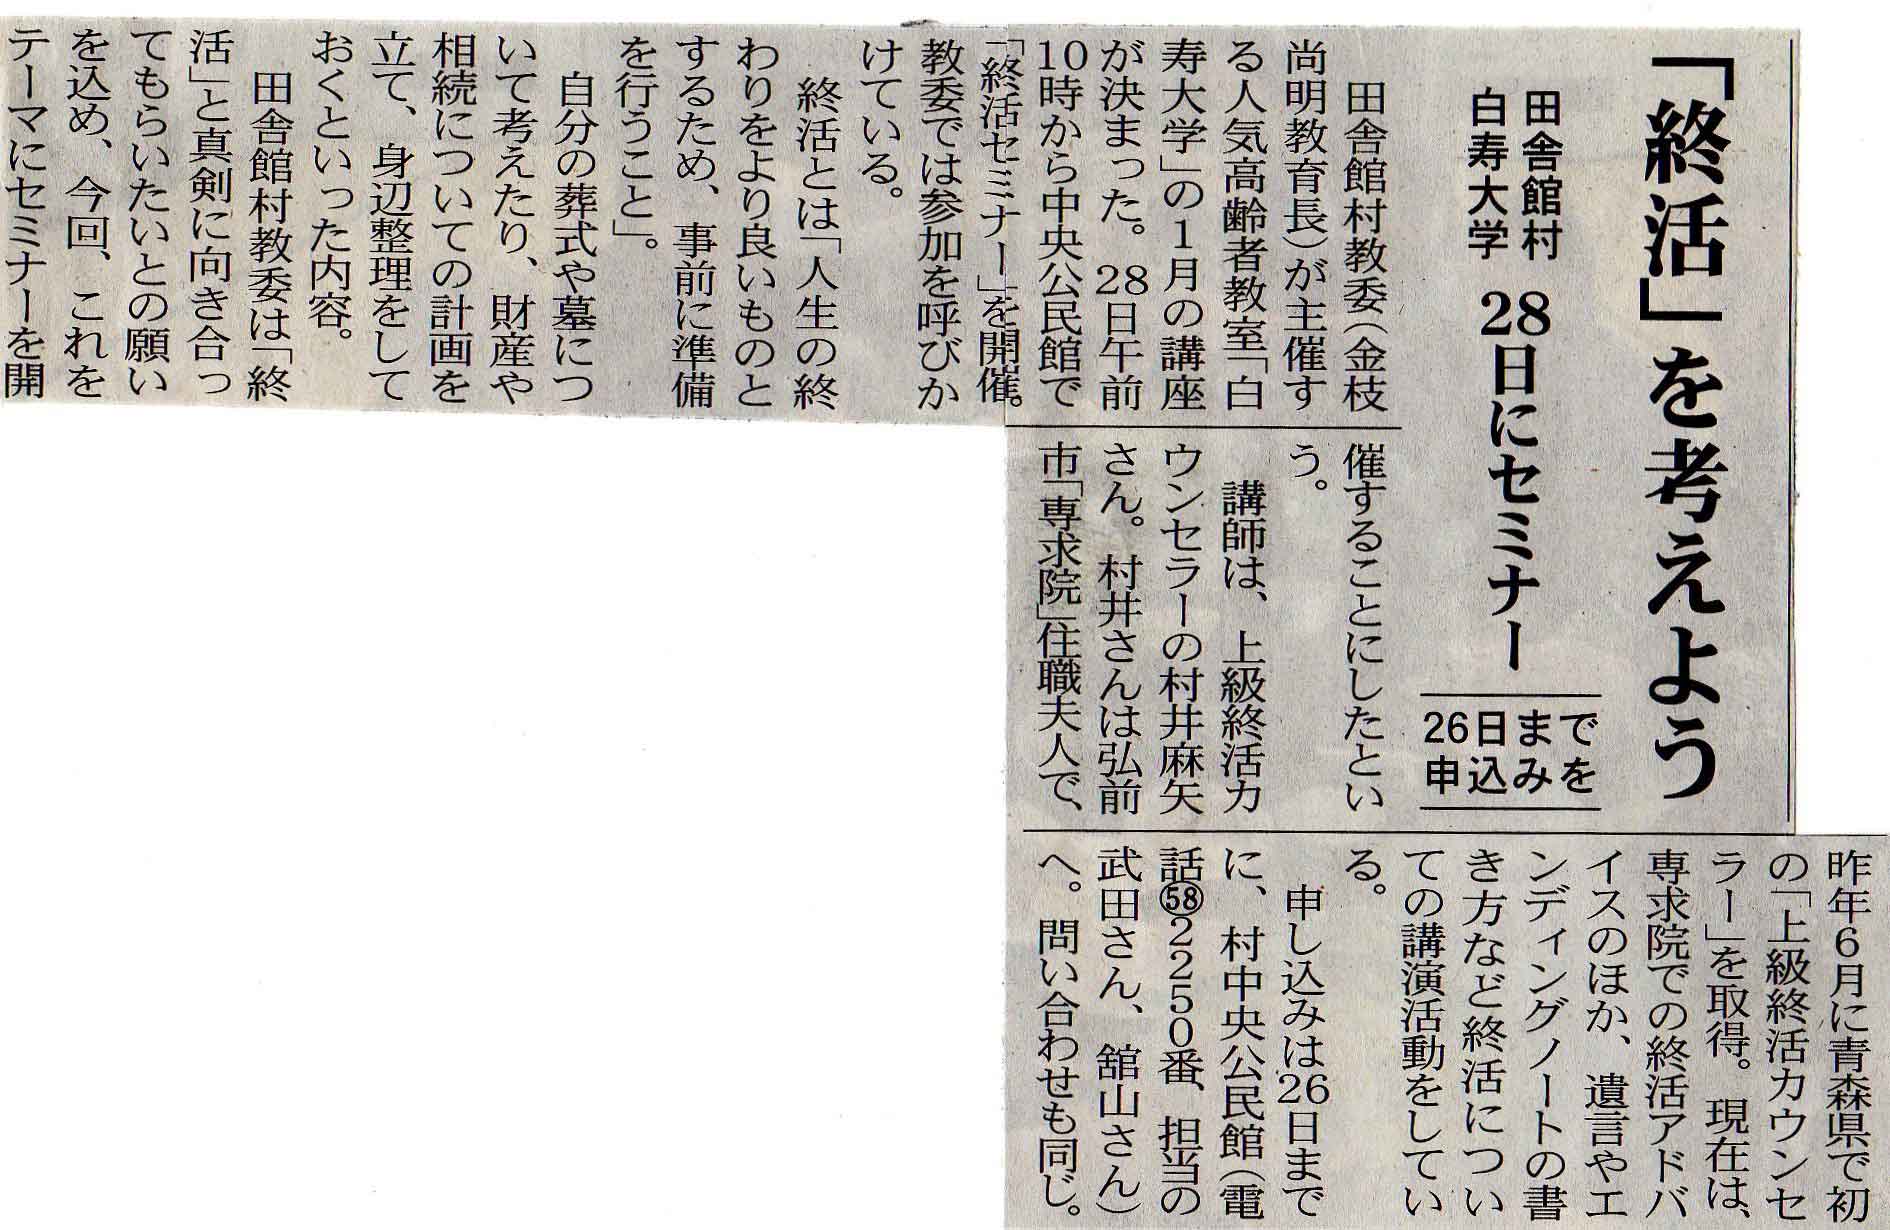 田舎館村、白寿大学の終活セミナーが津軽新報に掲載されました。